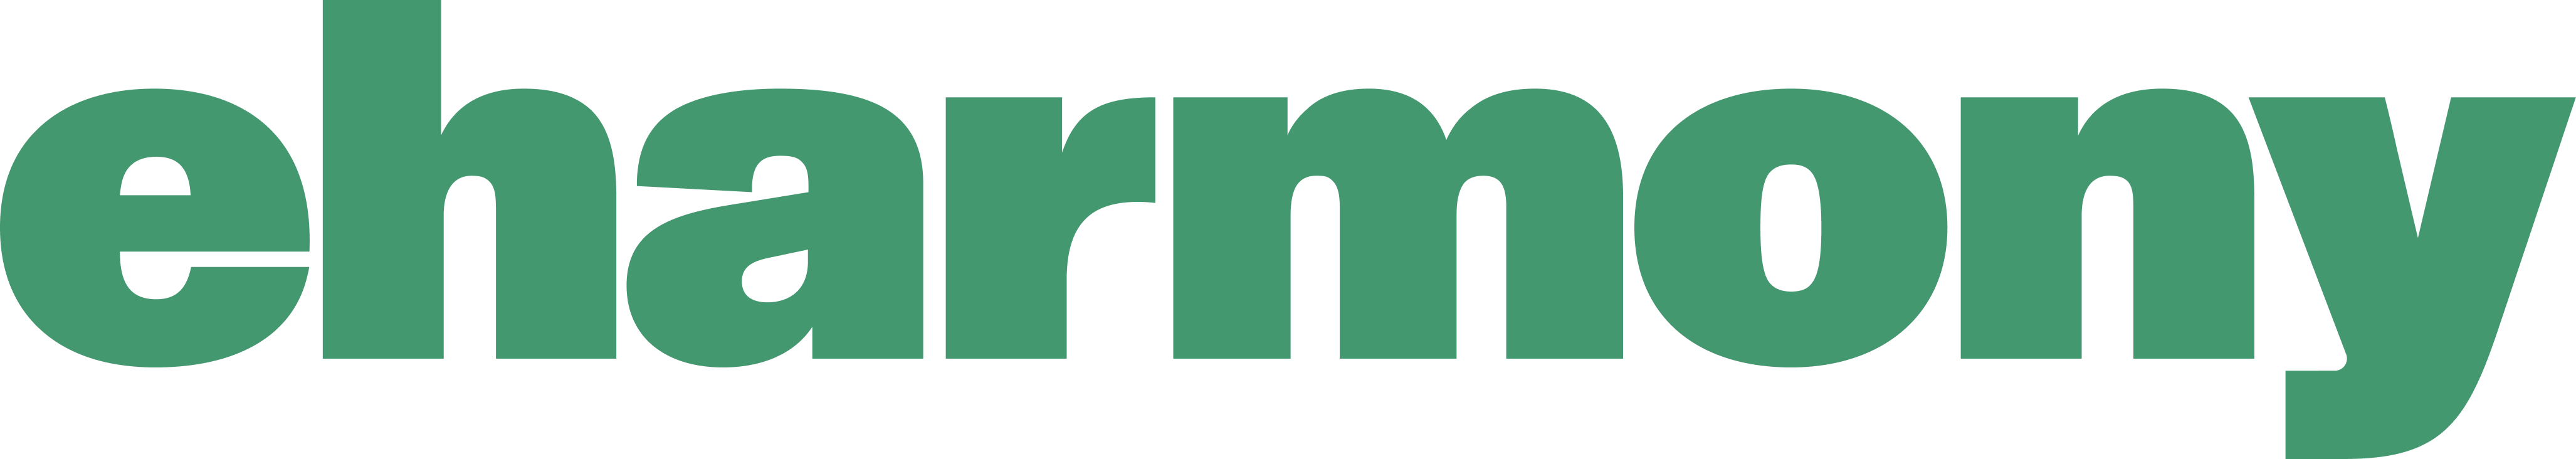 eharmony logo green 